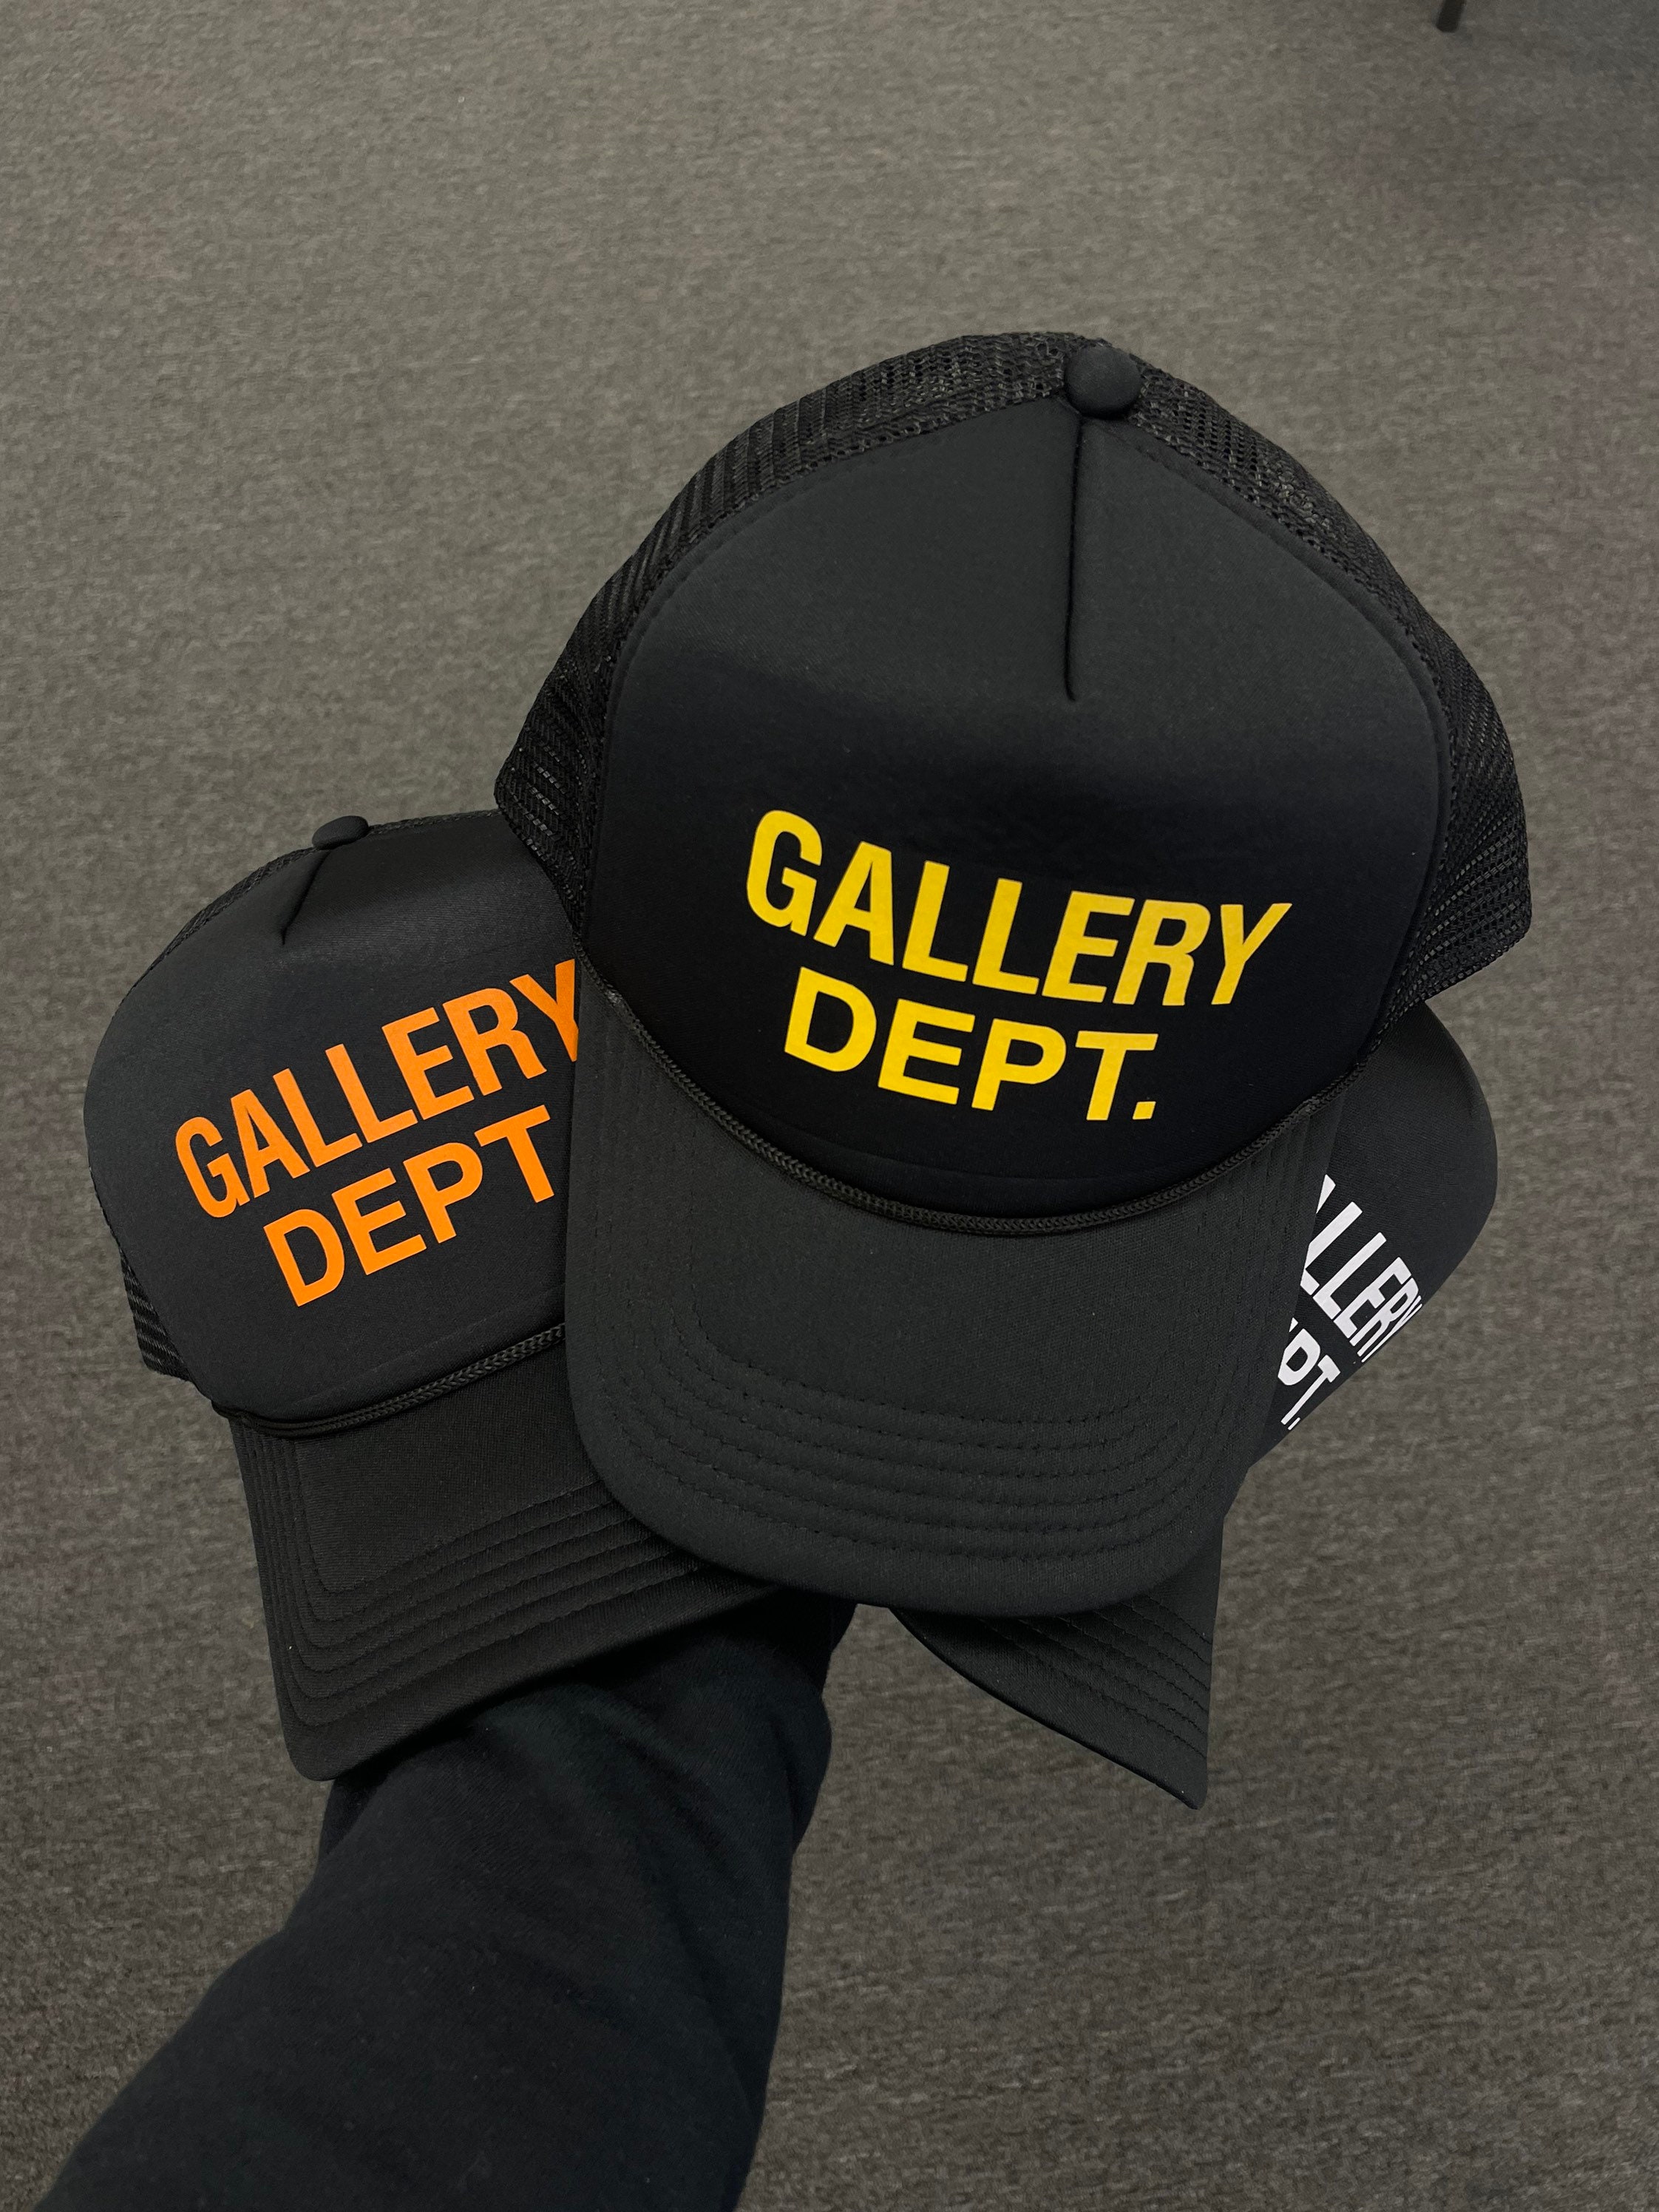 Gallery Dept Trucker Hat - Etsy Canada